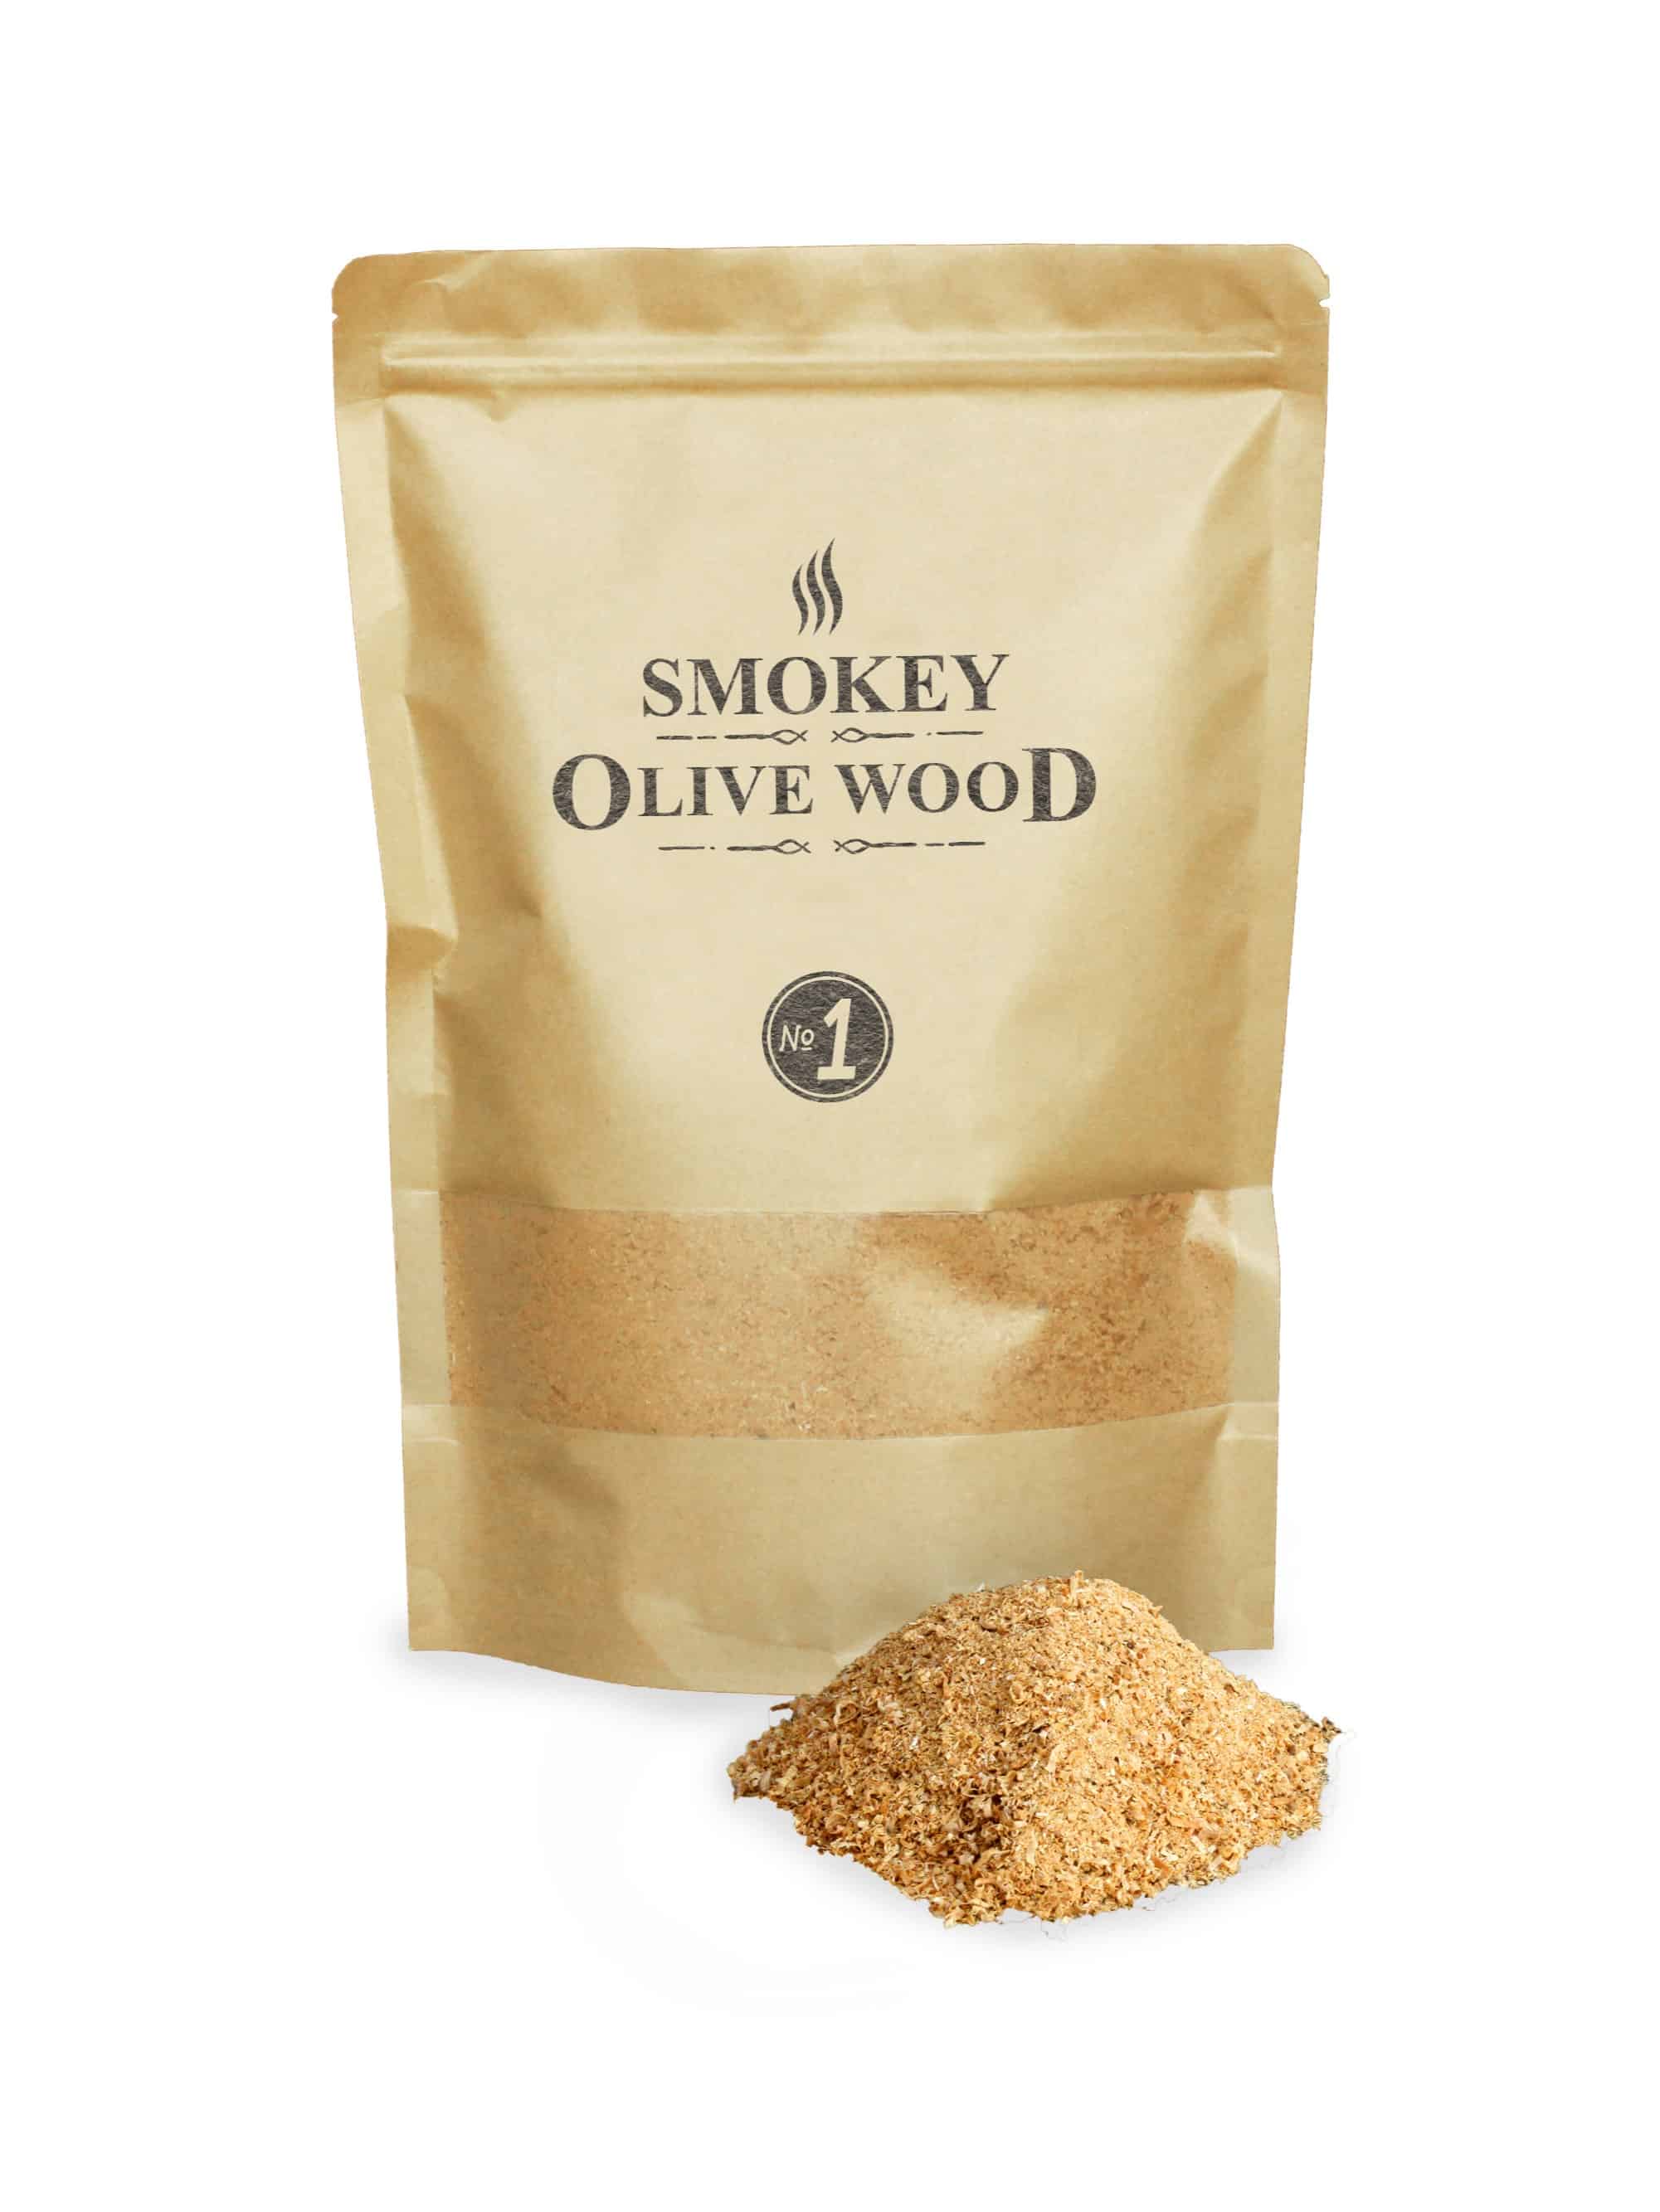 Smokey Olive Wood Räuchermehl Nº1 Smoker BBQ Chips Grill Sparbrand